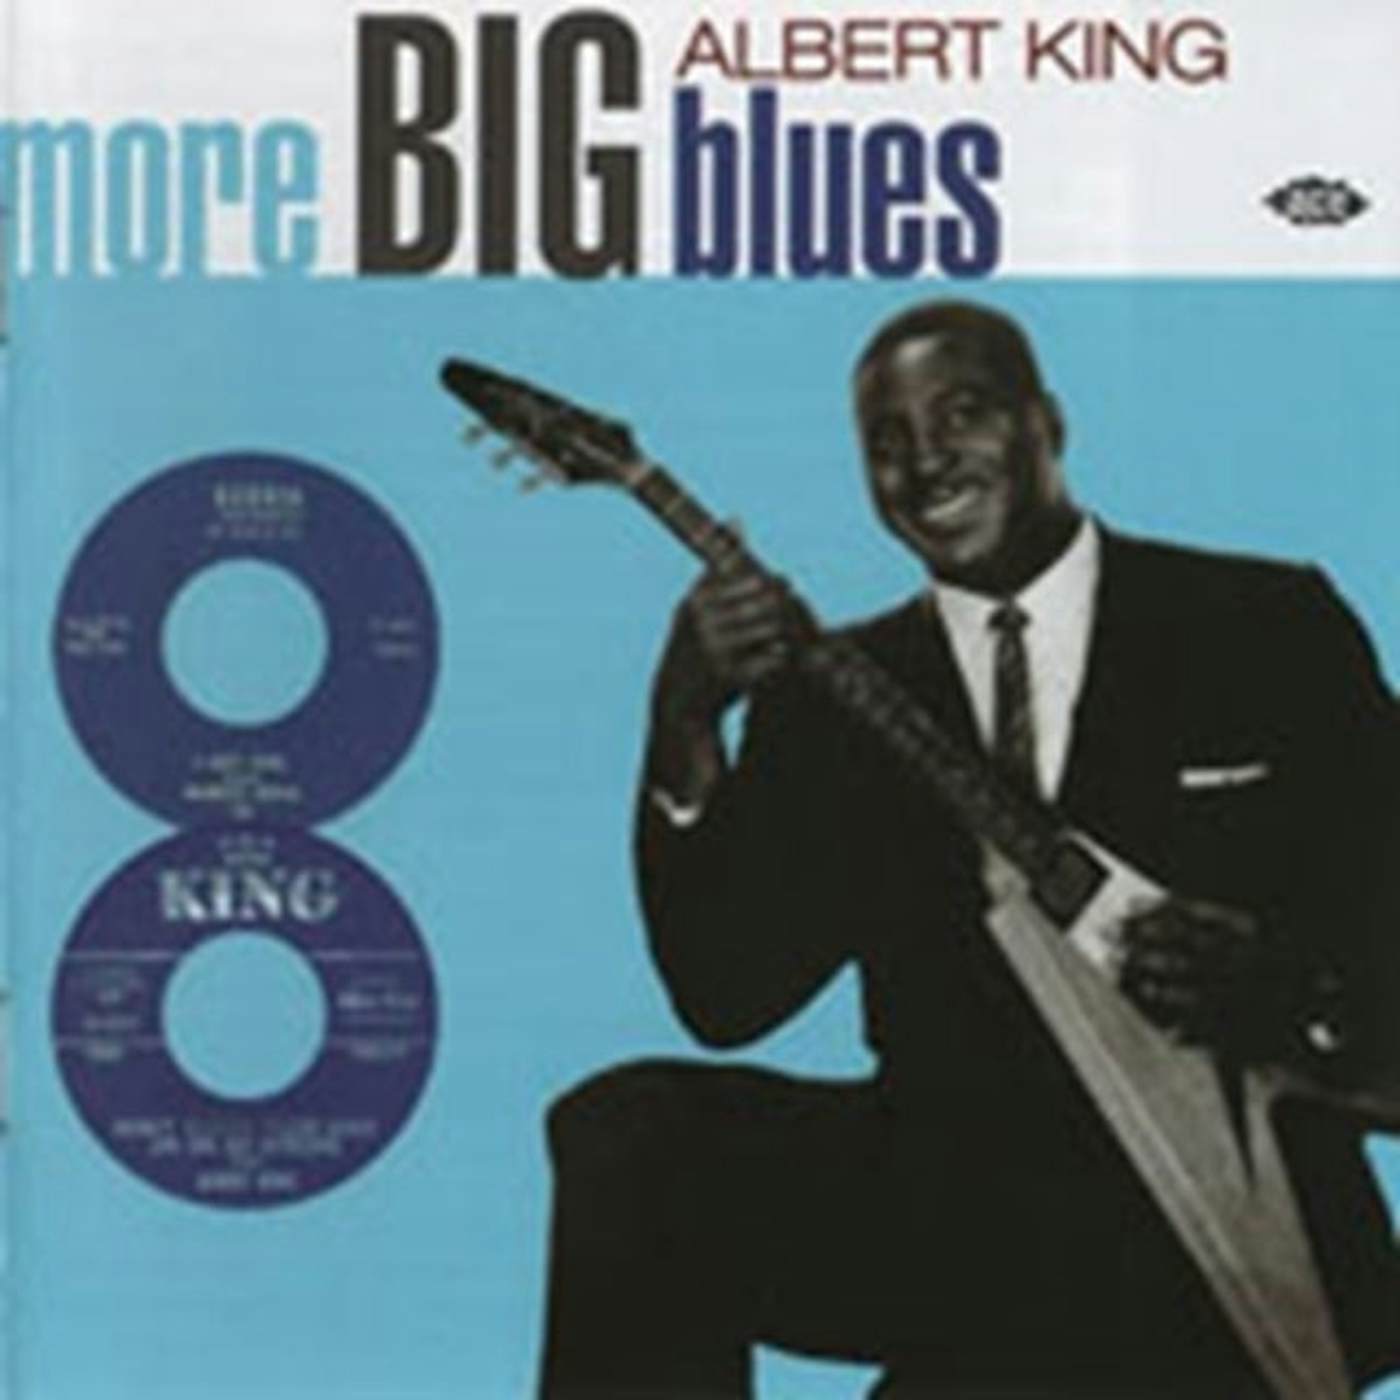 Albert King CD - More Big Blues